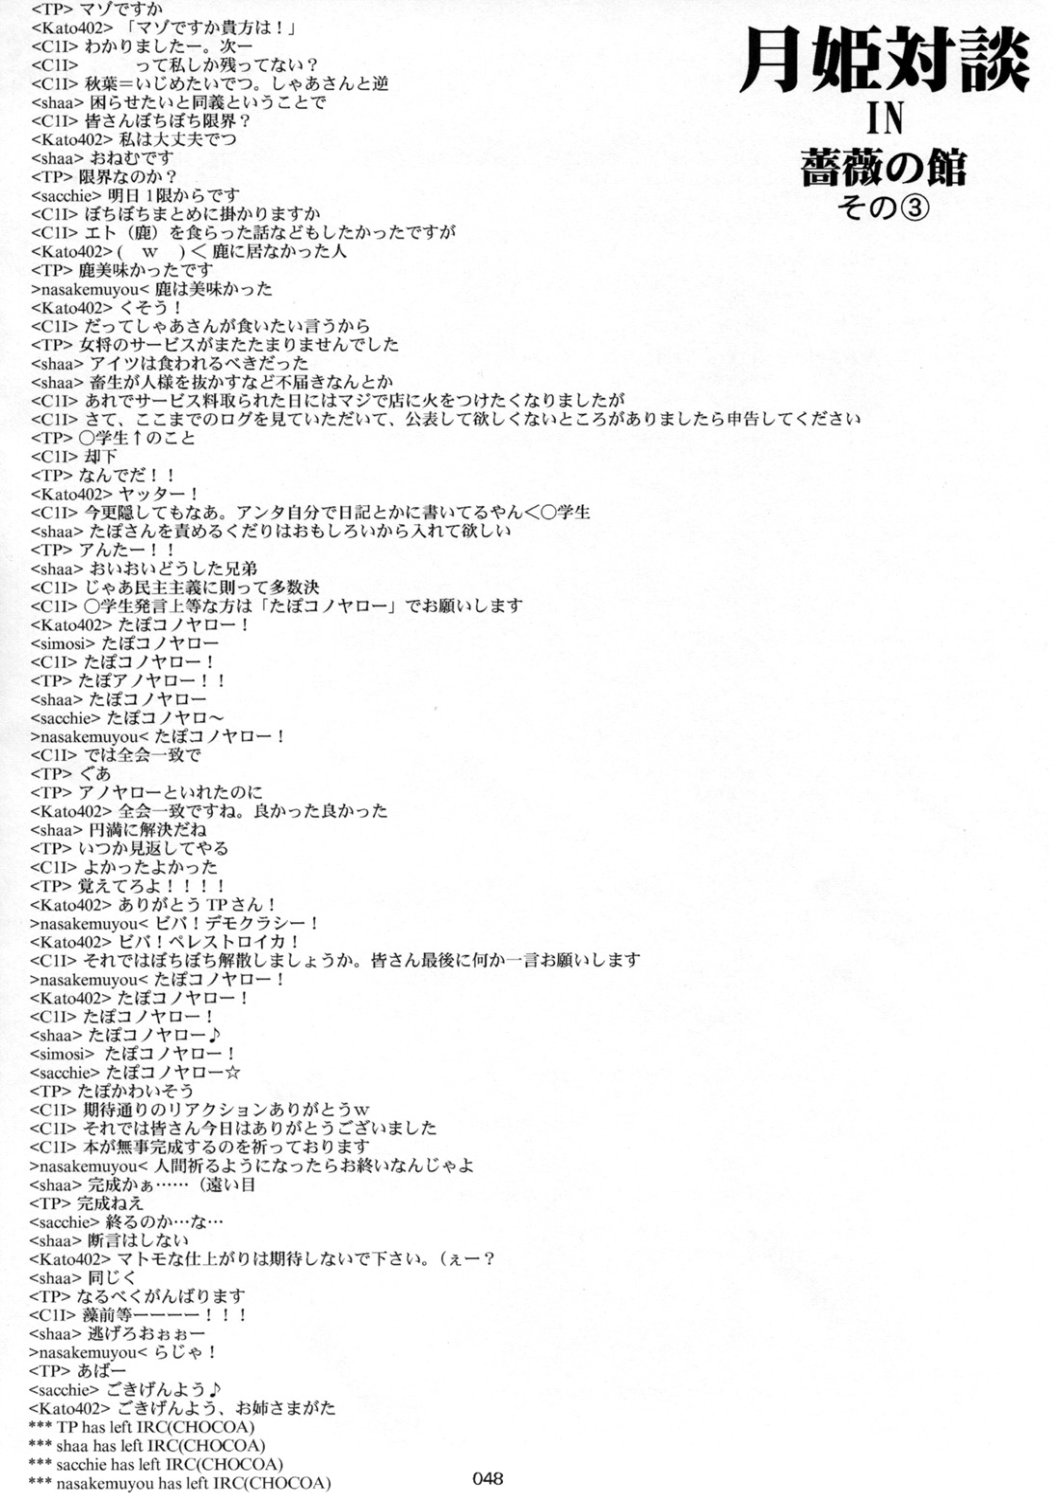 [Inochi no Furusato, Neko-bus Tei, Zangyaku Koui Teate] Akihamania [AKIHA MANIACS] (Tsukihime) page 47 full